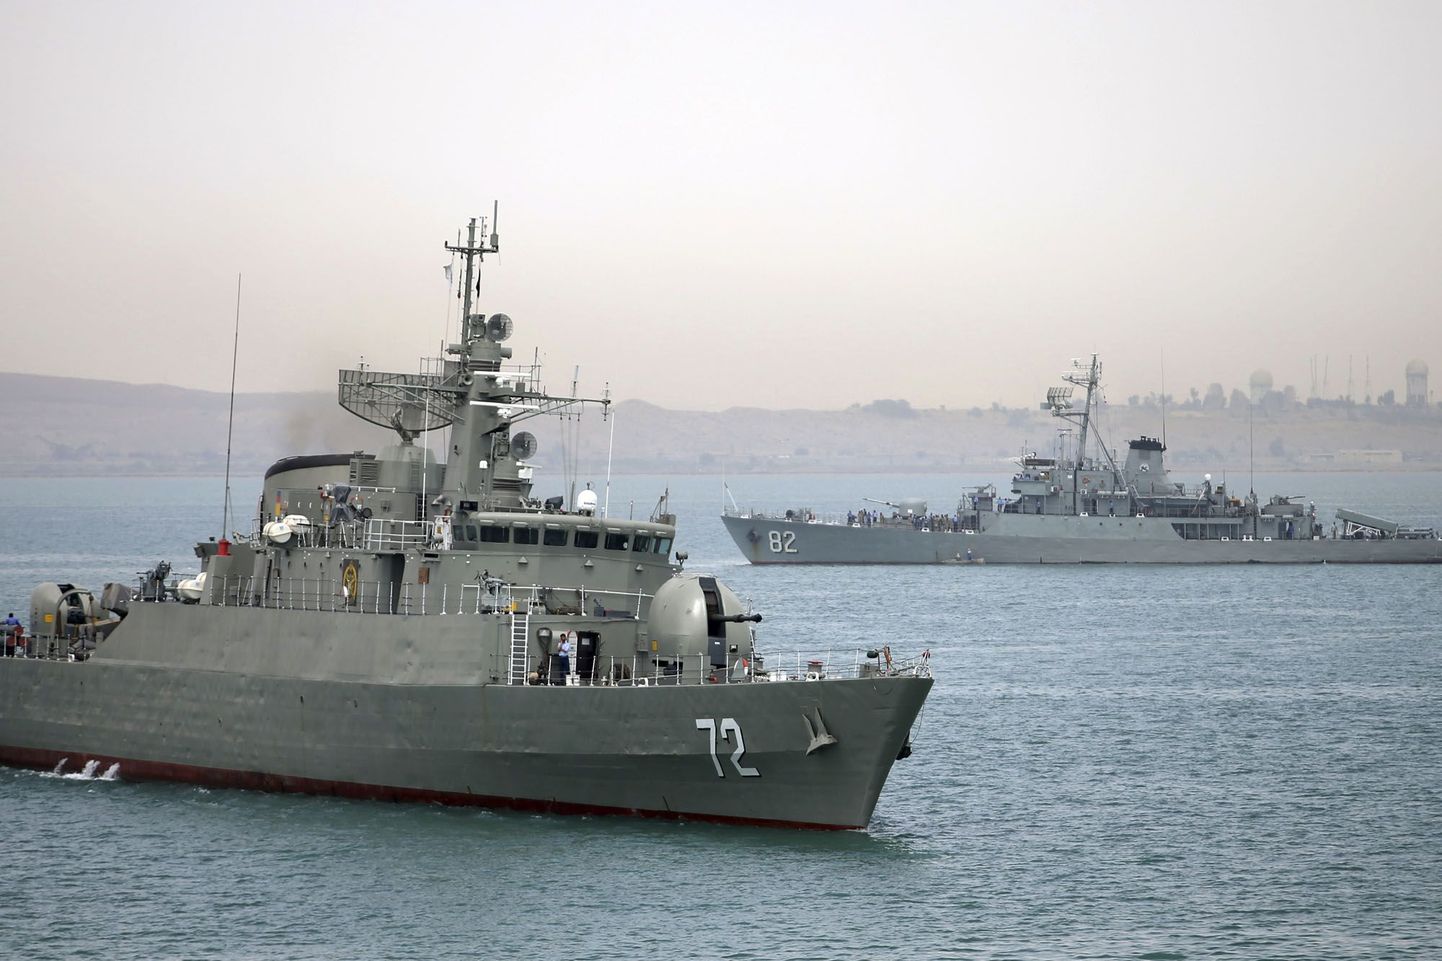 Iraani sõjalaevad. Pilt on illustratiivne